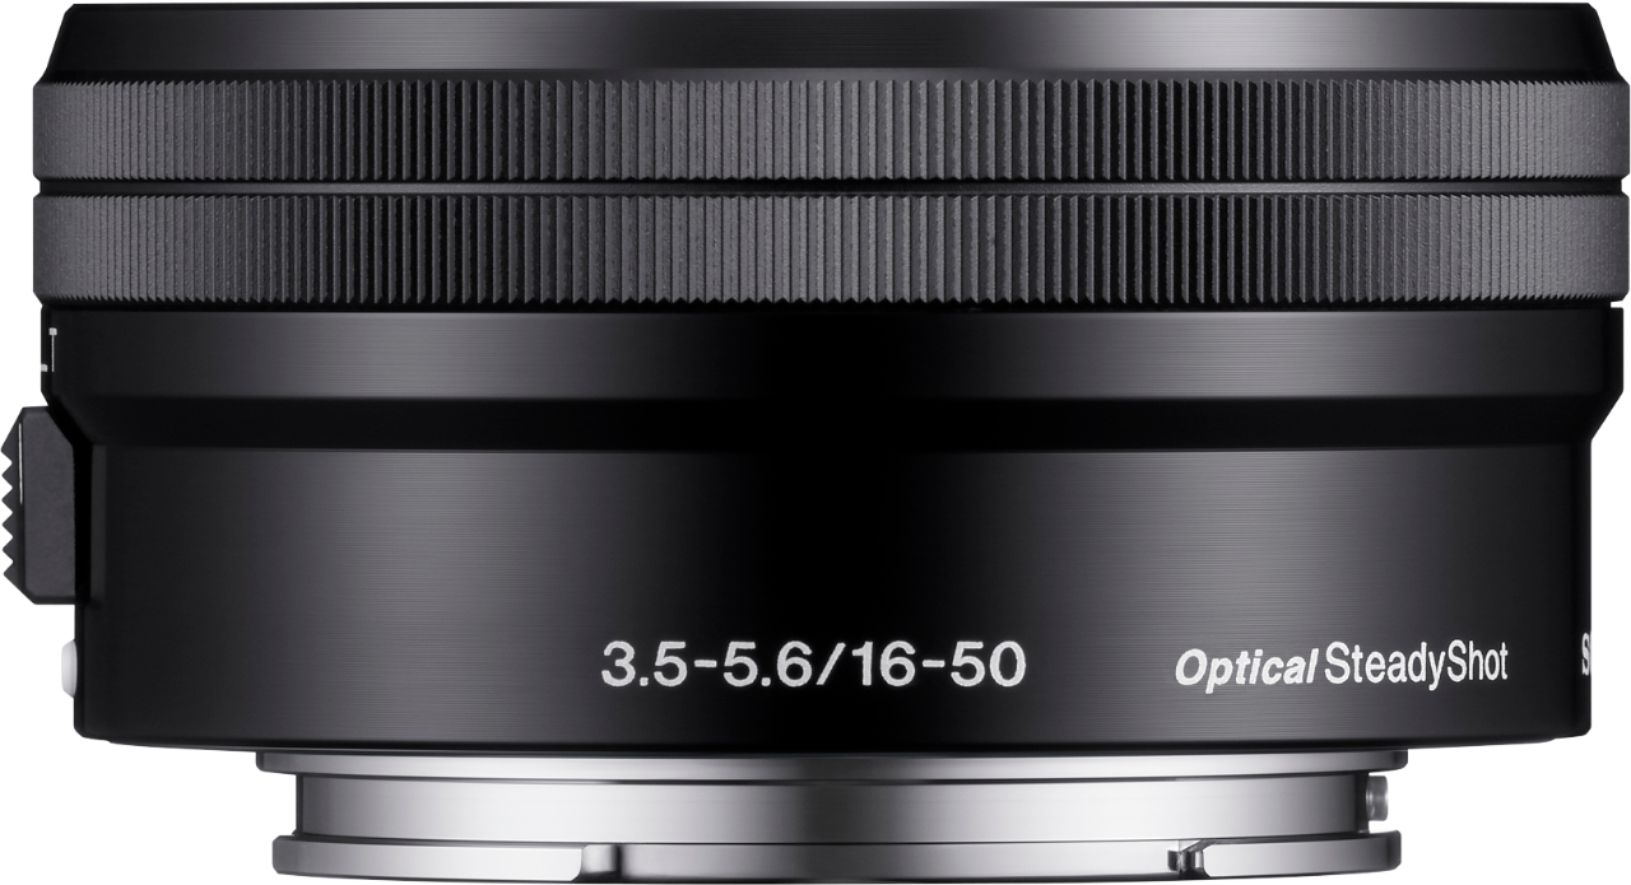 カメラ レンズ(ズーム) Sony 16-50mm f/3.5-5.6 Retractable Zoom Lens for Most NEX E 